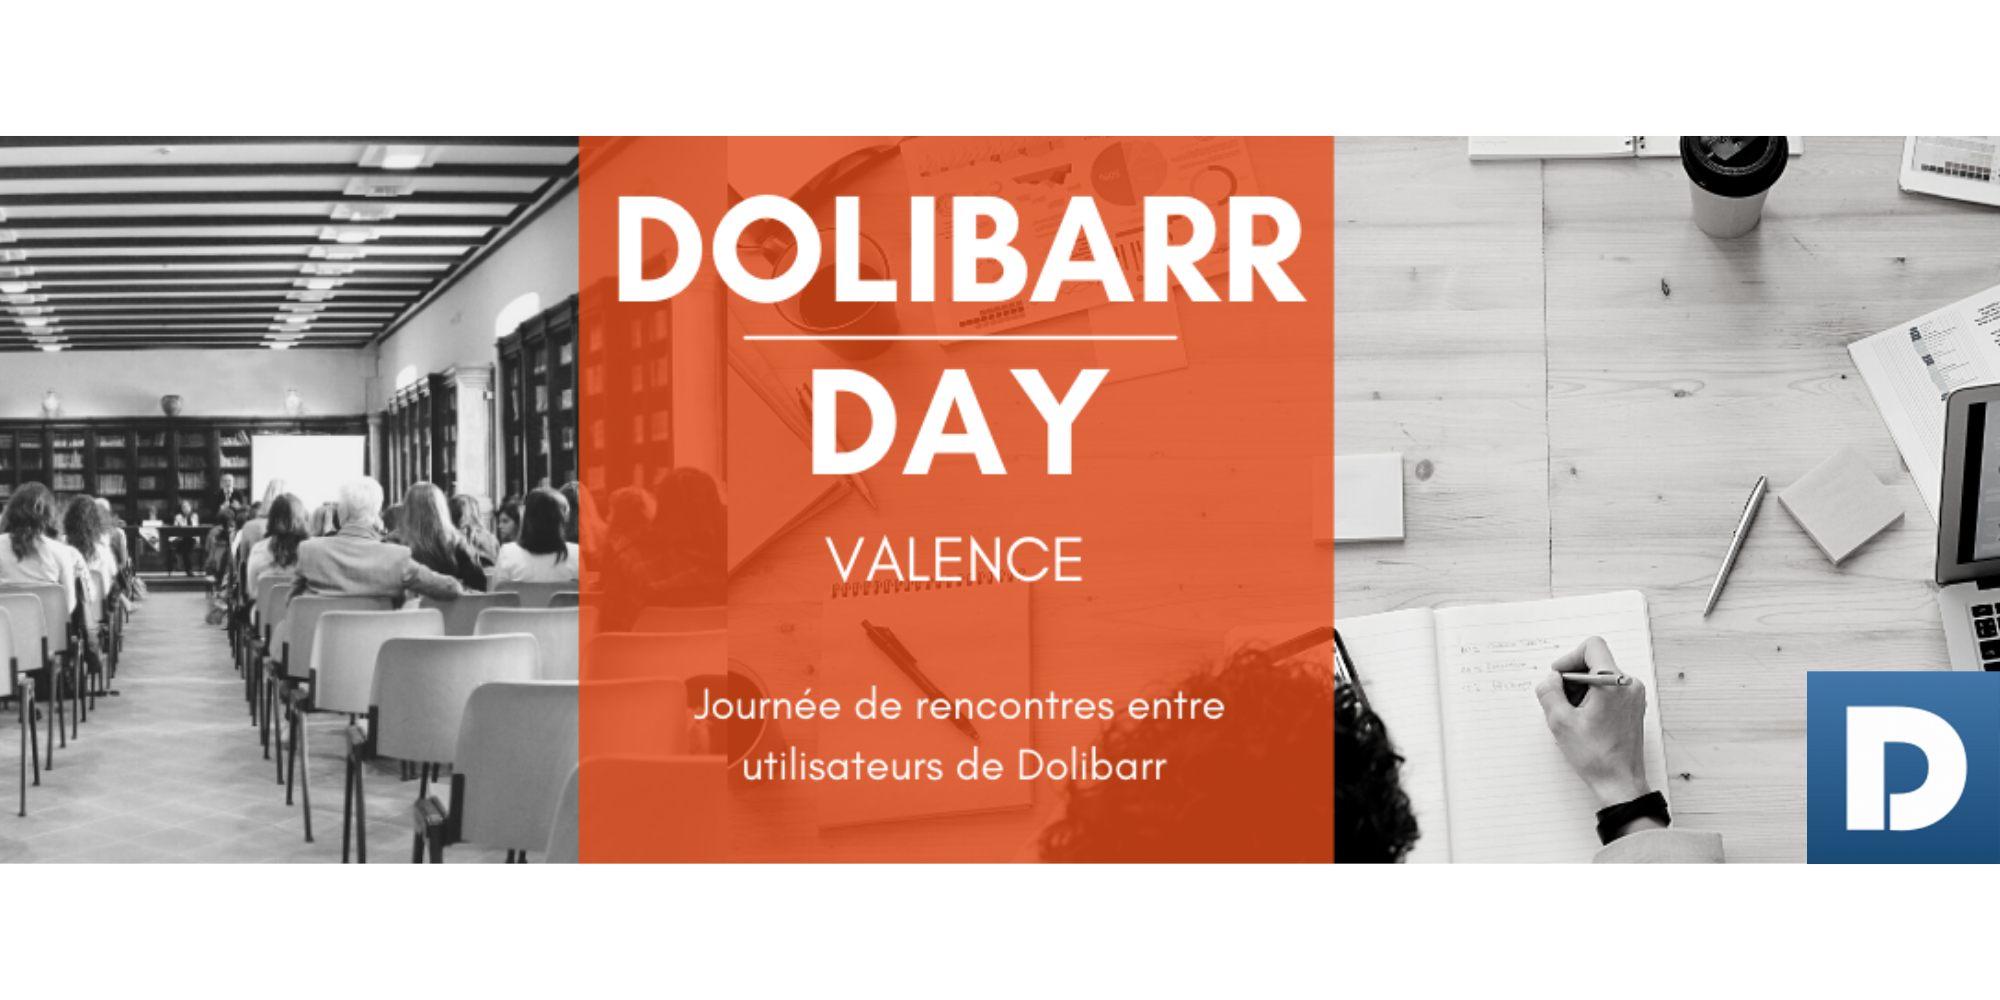 DolibarrDay à Valence